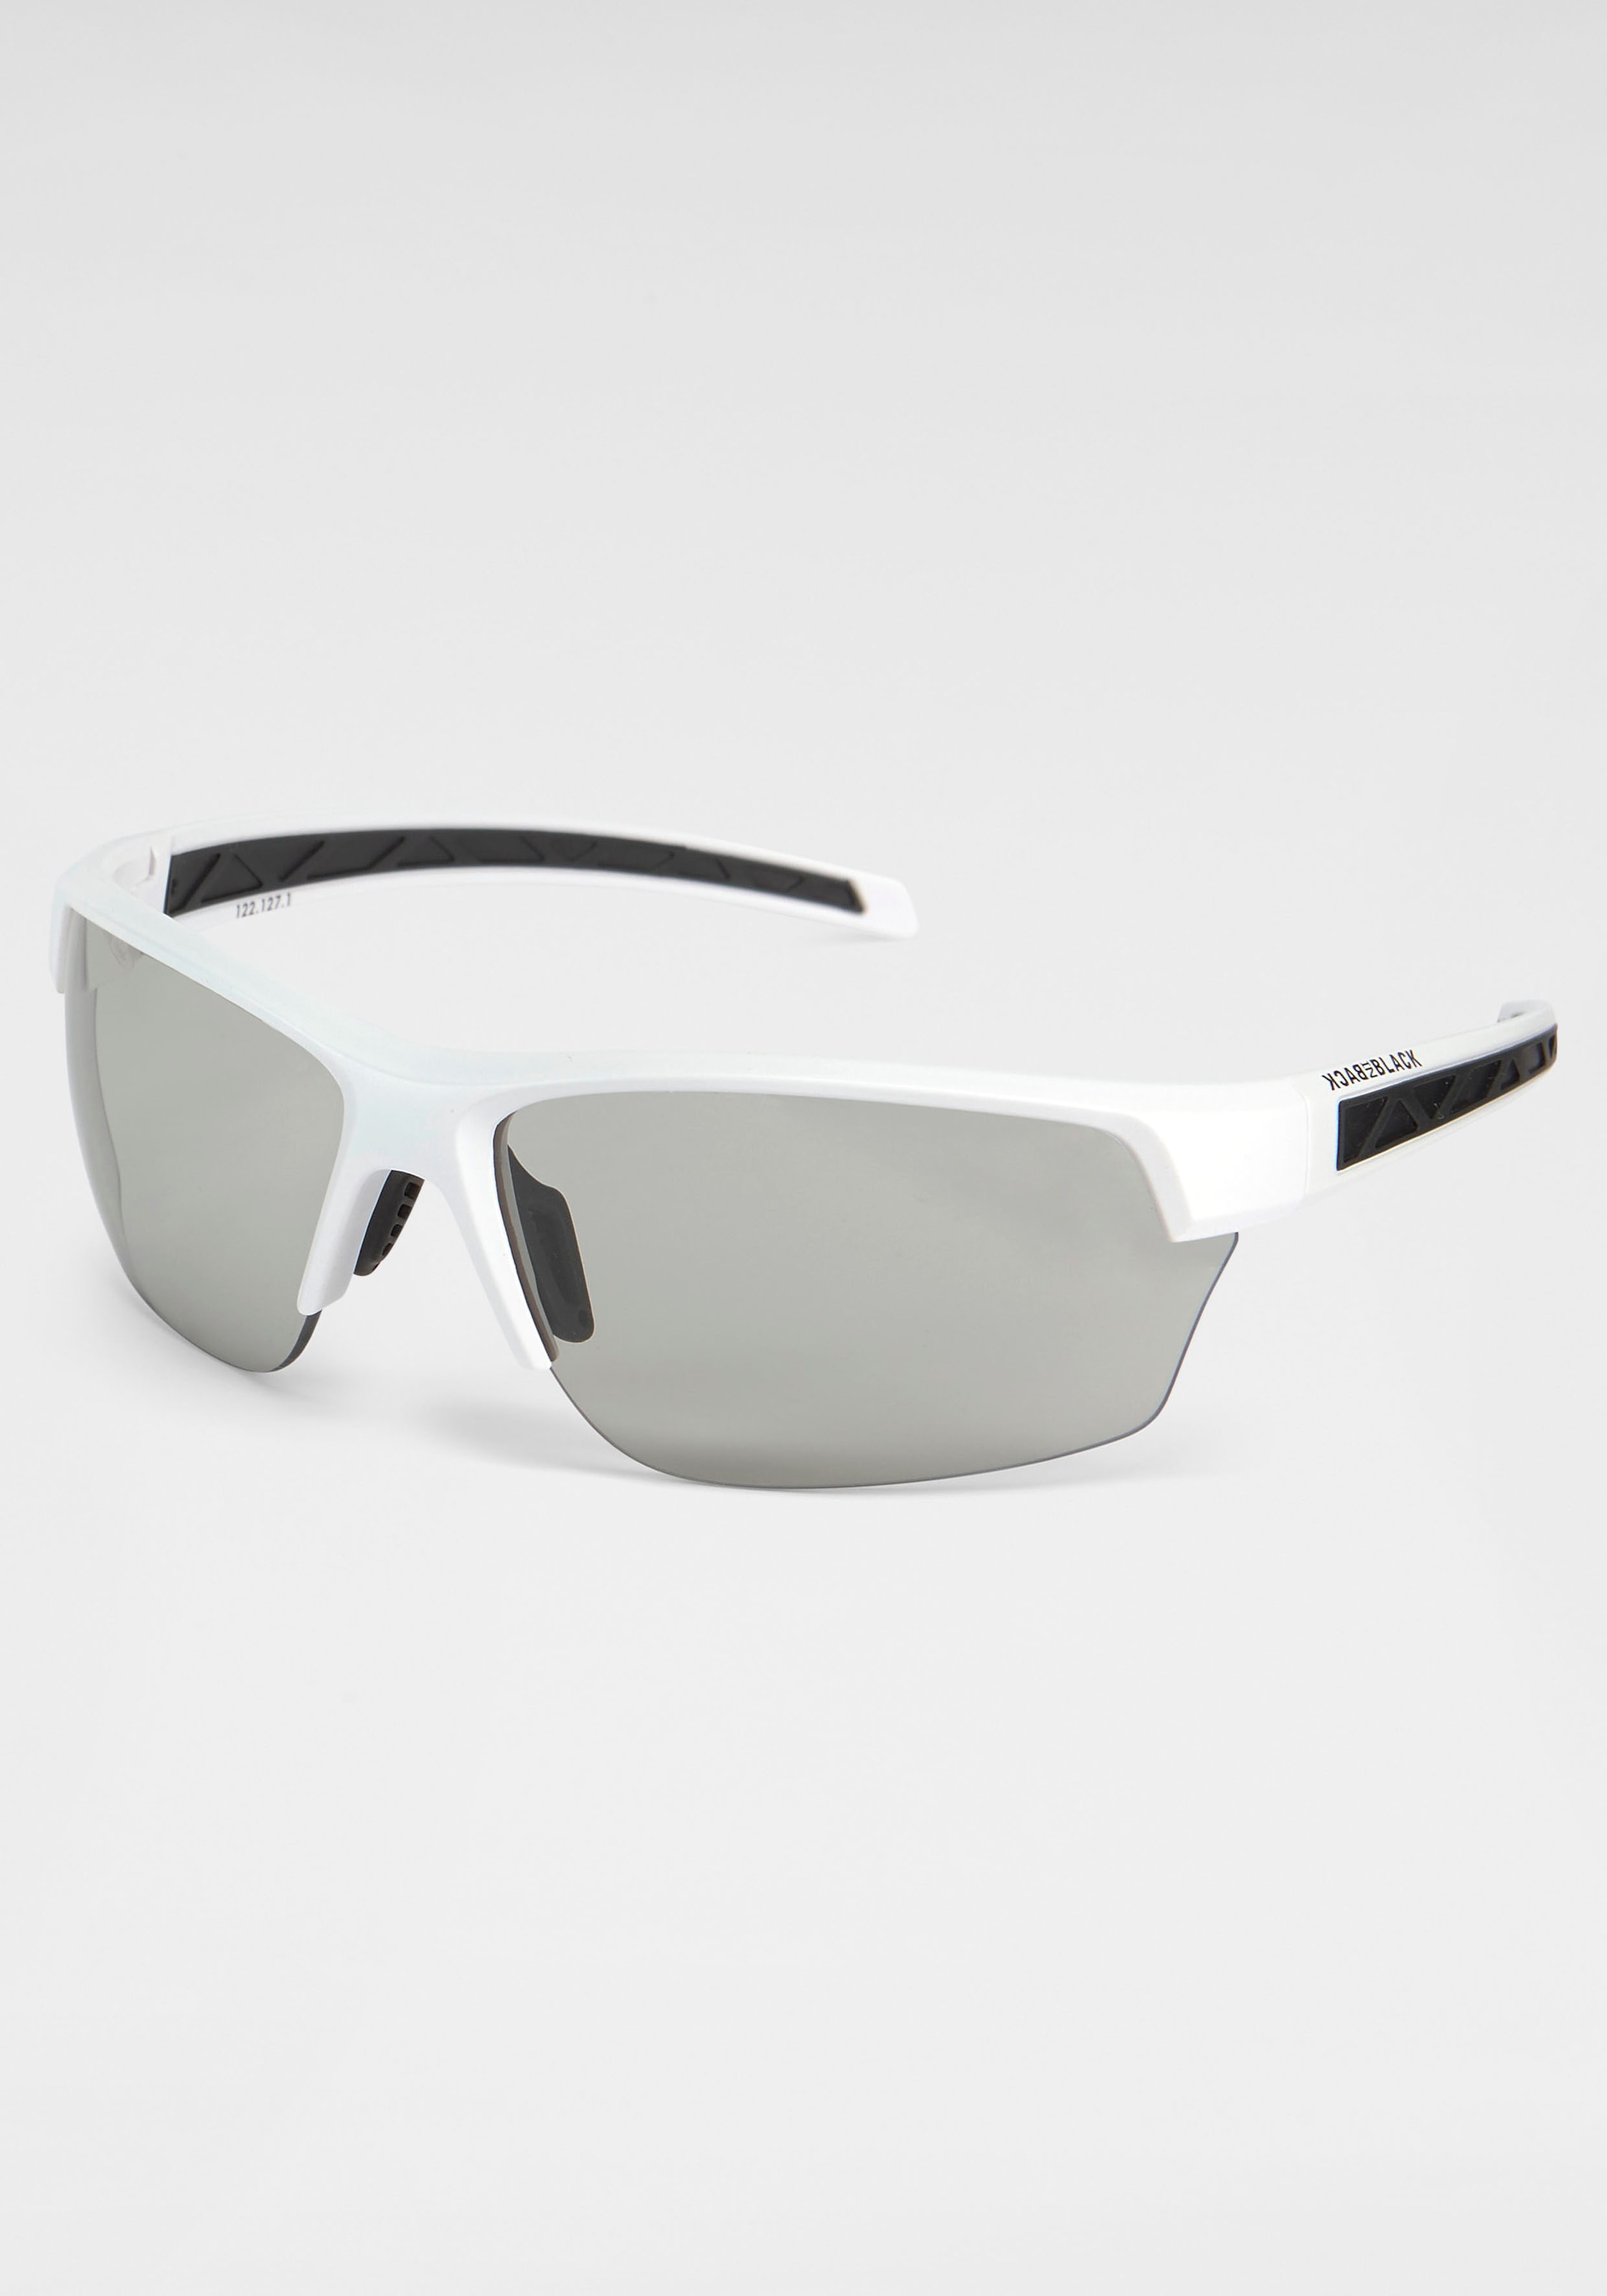 BACK Verspiegelte BLACK Gläser bei Sonnenbrille, IN Eyewear